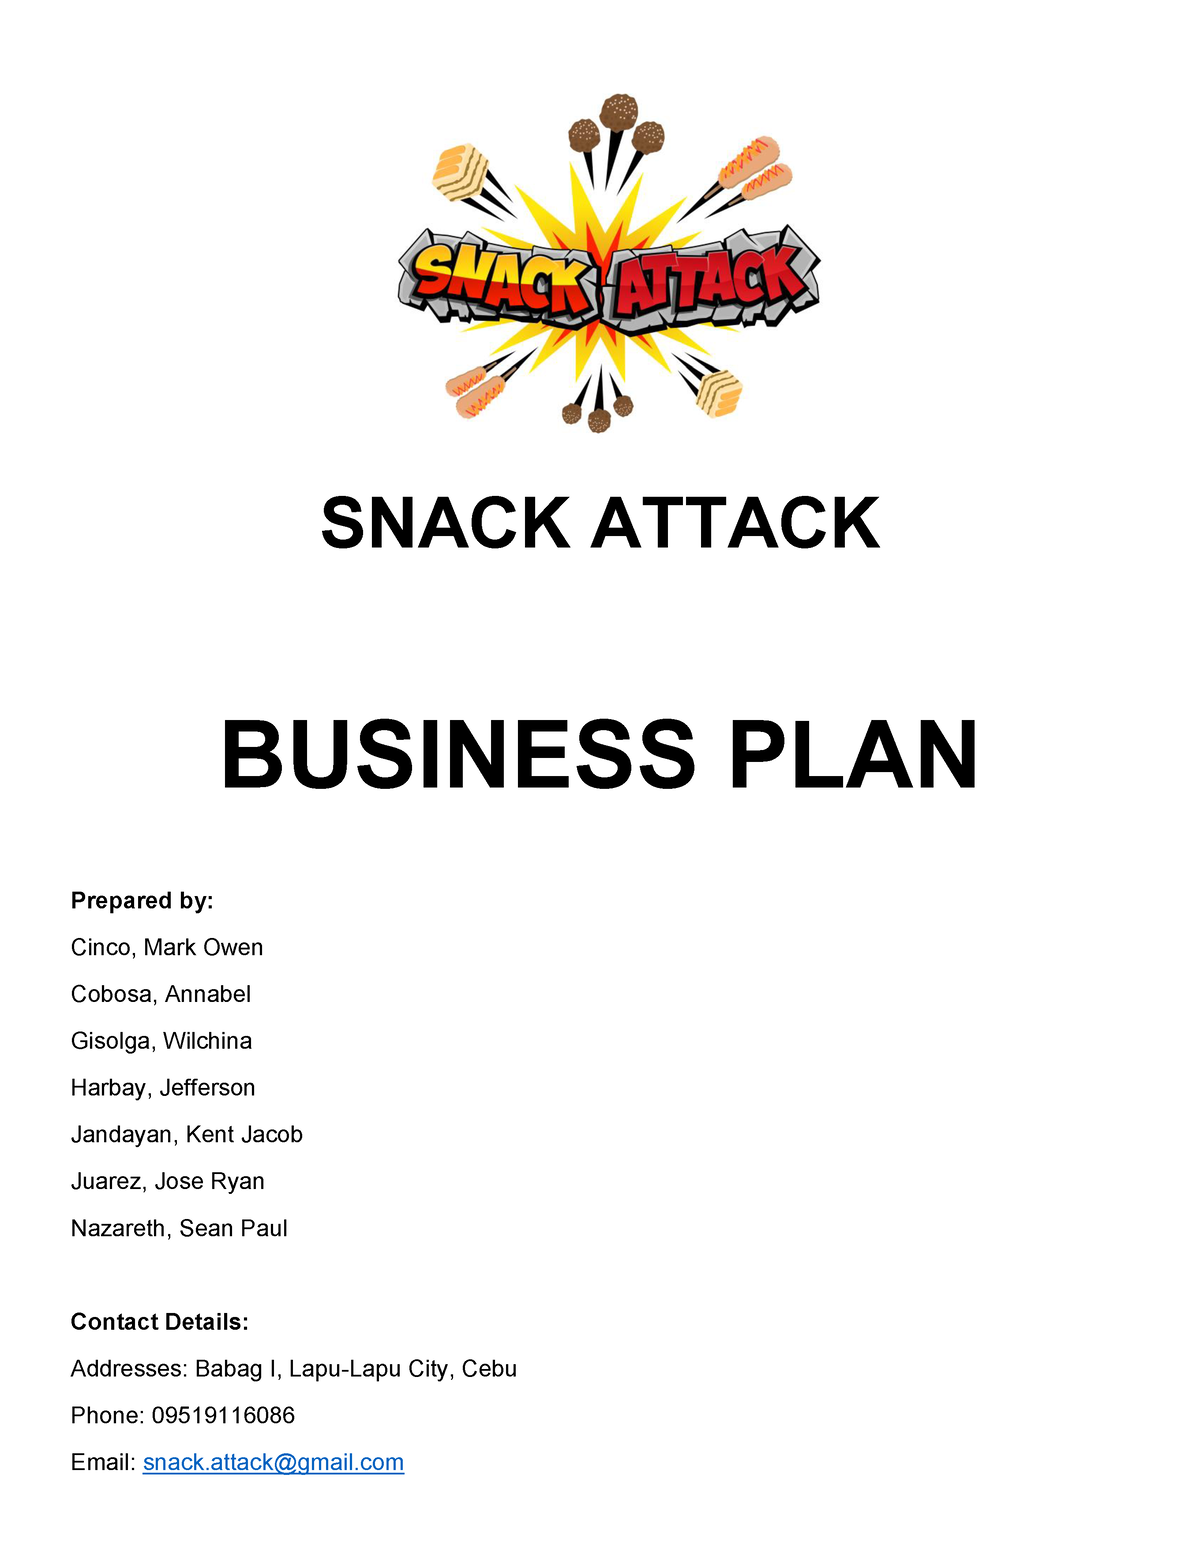 business plan grade 12